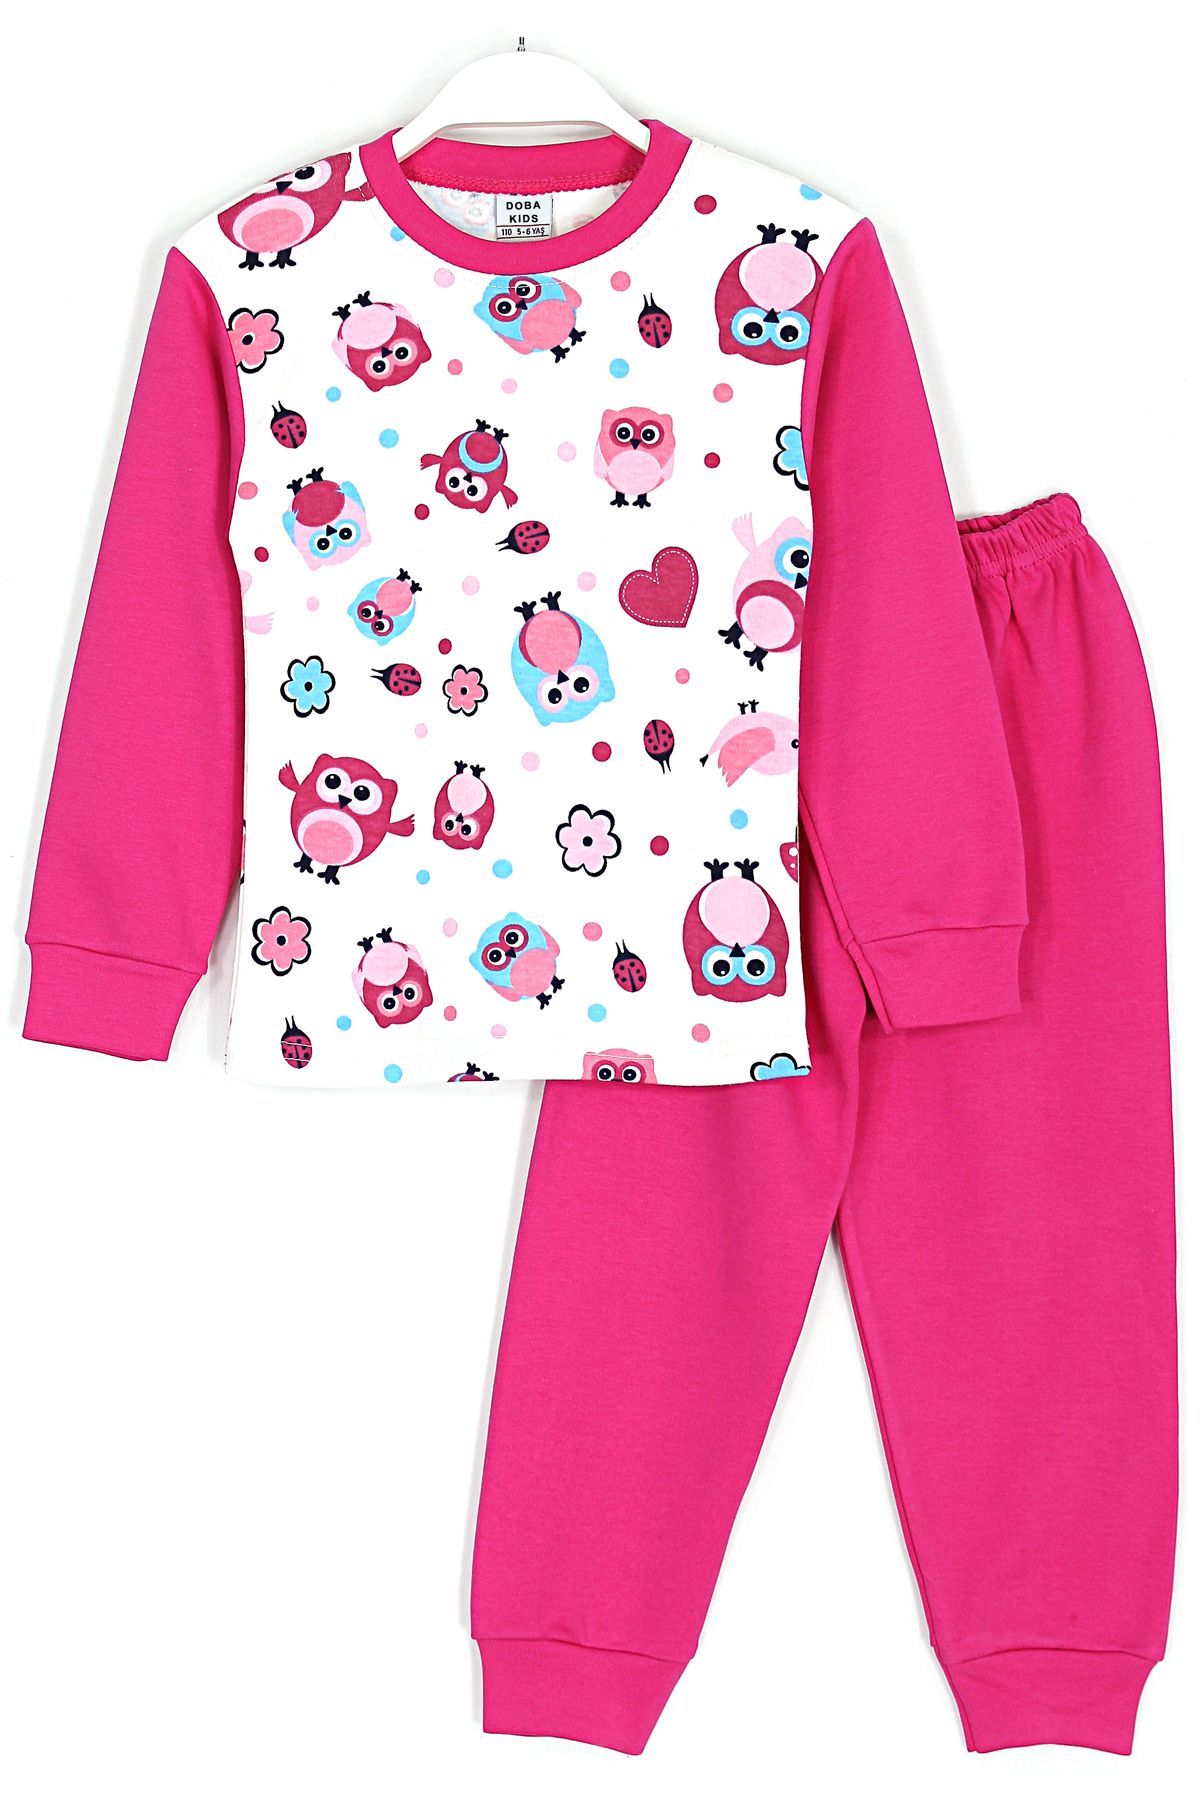 DobaKids Kuş Desenli Pamuklu Kız Çocuk Pijama Takımı 4 - 10 Yaş Aralığı Koyu Pembe